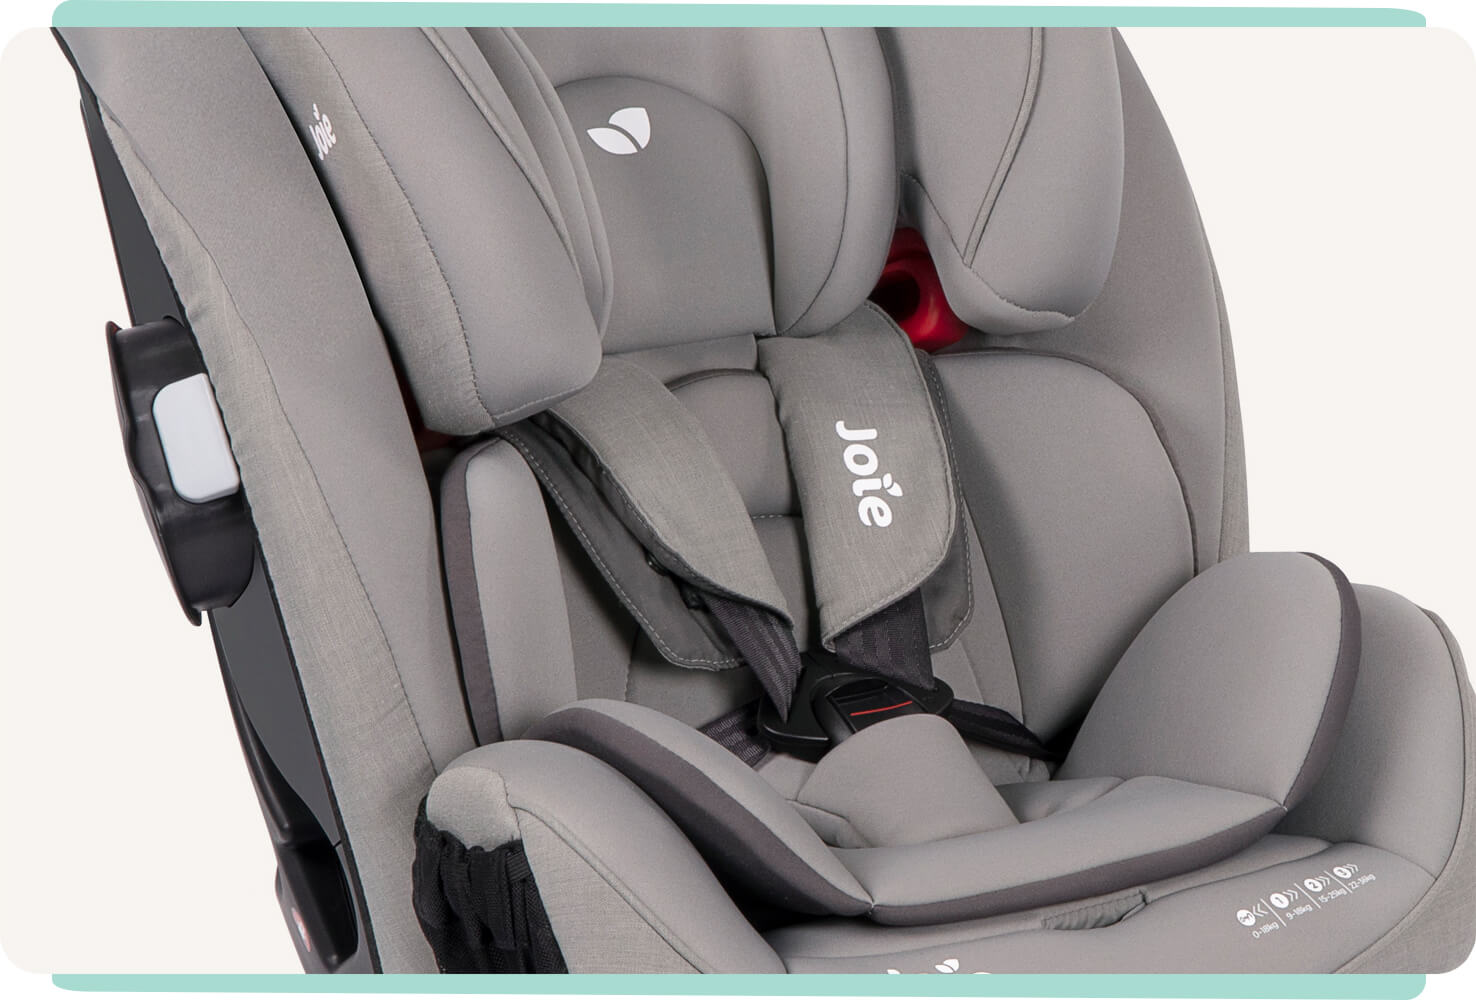 Detalle de una silla de coche Joie Every Stage FX gris claro que muestra el arnés de 5 puntos y el reductor para bebés pequeños.